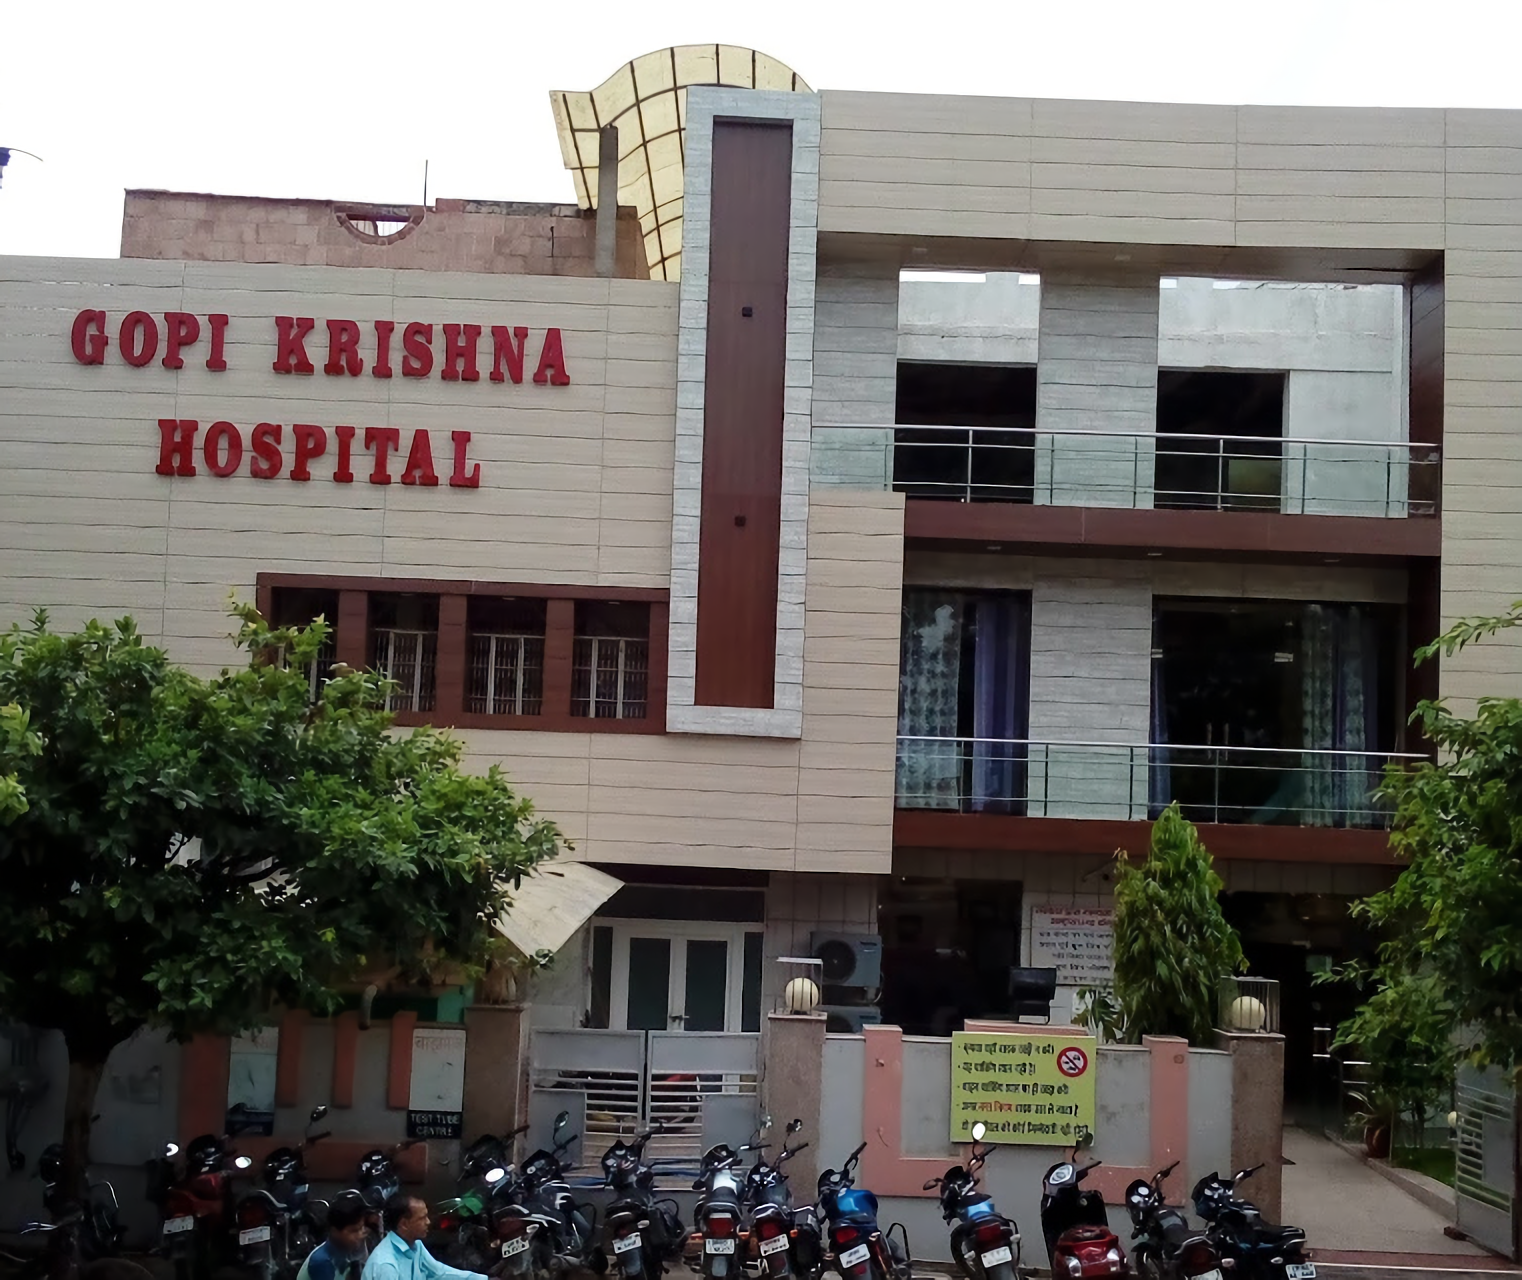 Gopi Krishna Hospital